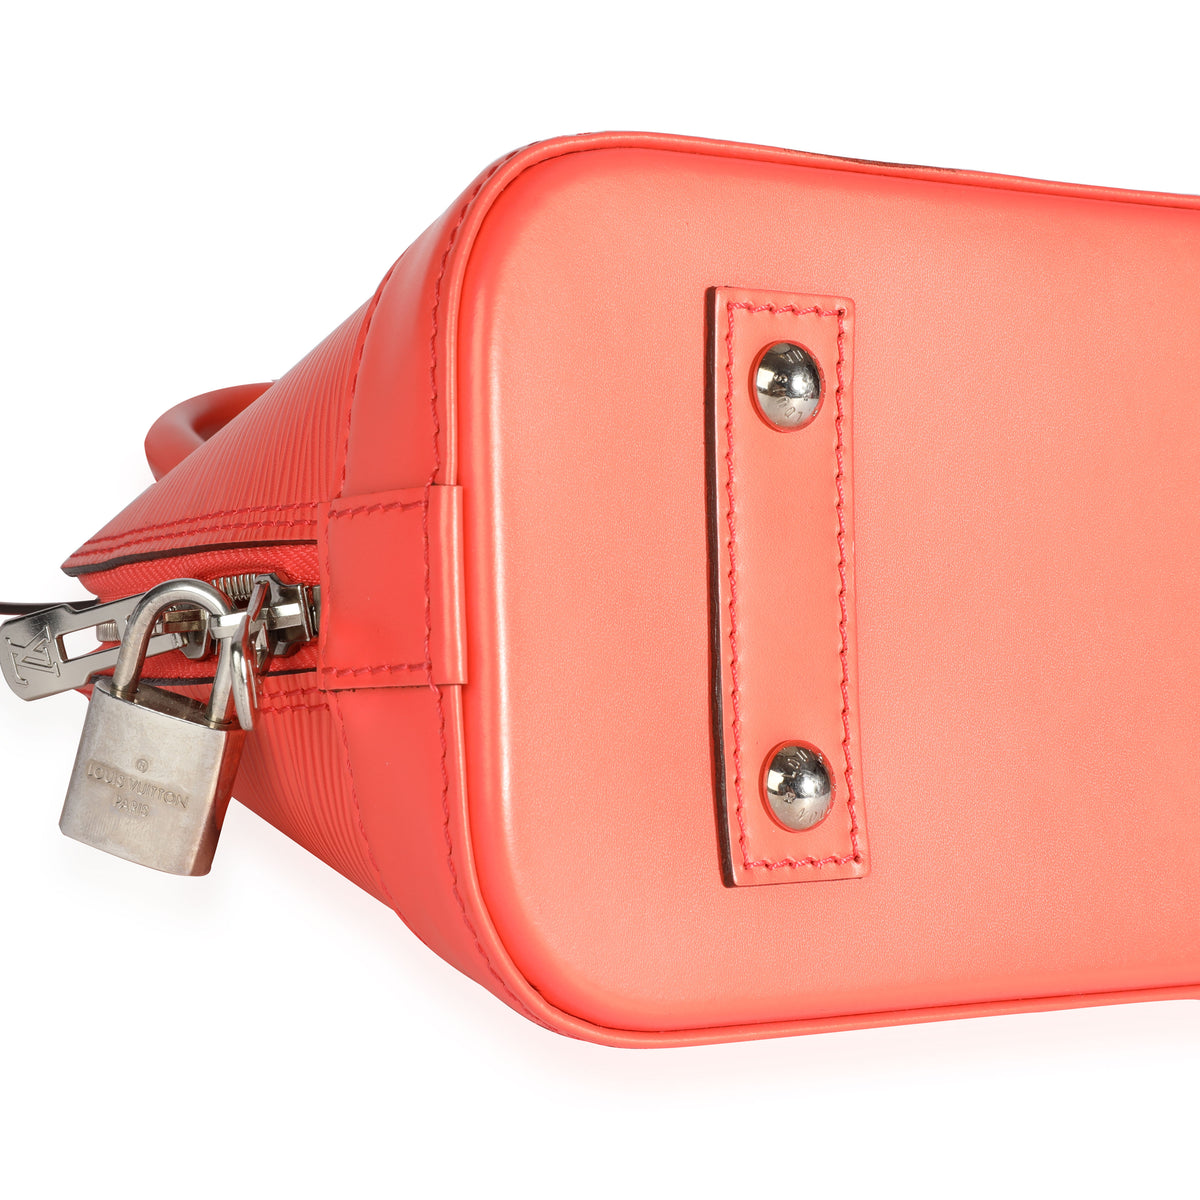 Louis Vuitton Poppy Epi Leather Alma BB Bag Handbag with Strap